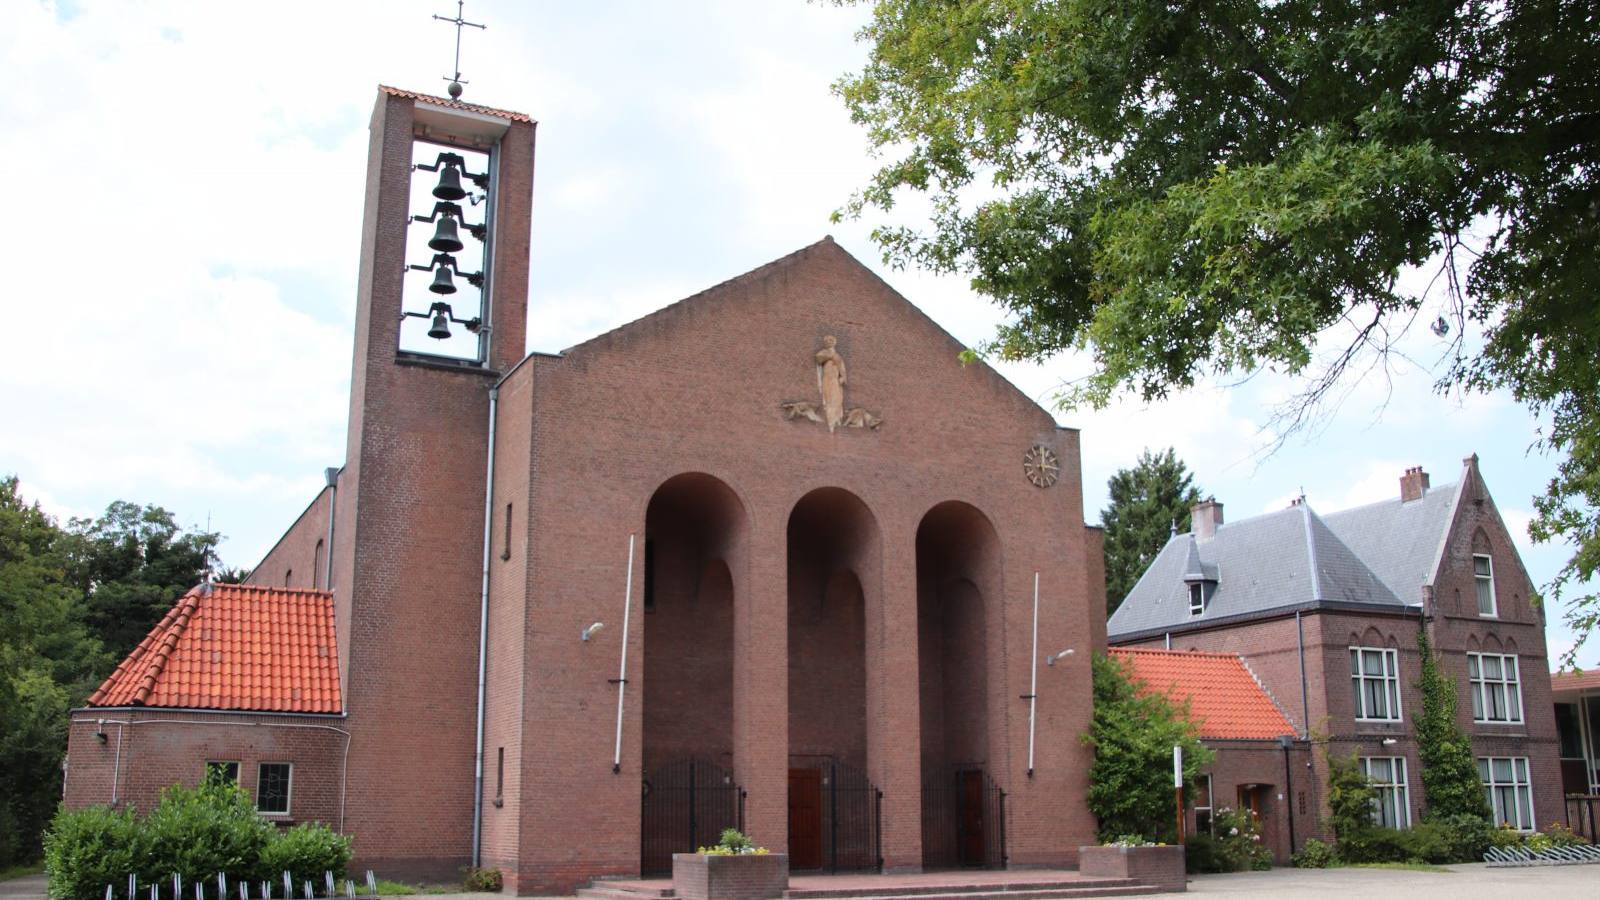 Kerk_DeBilt_Michaelkerk (115)